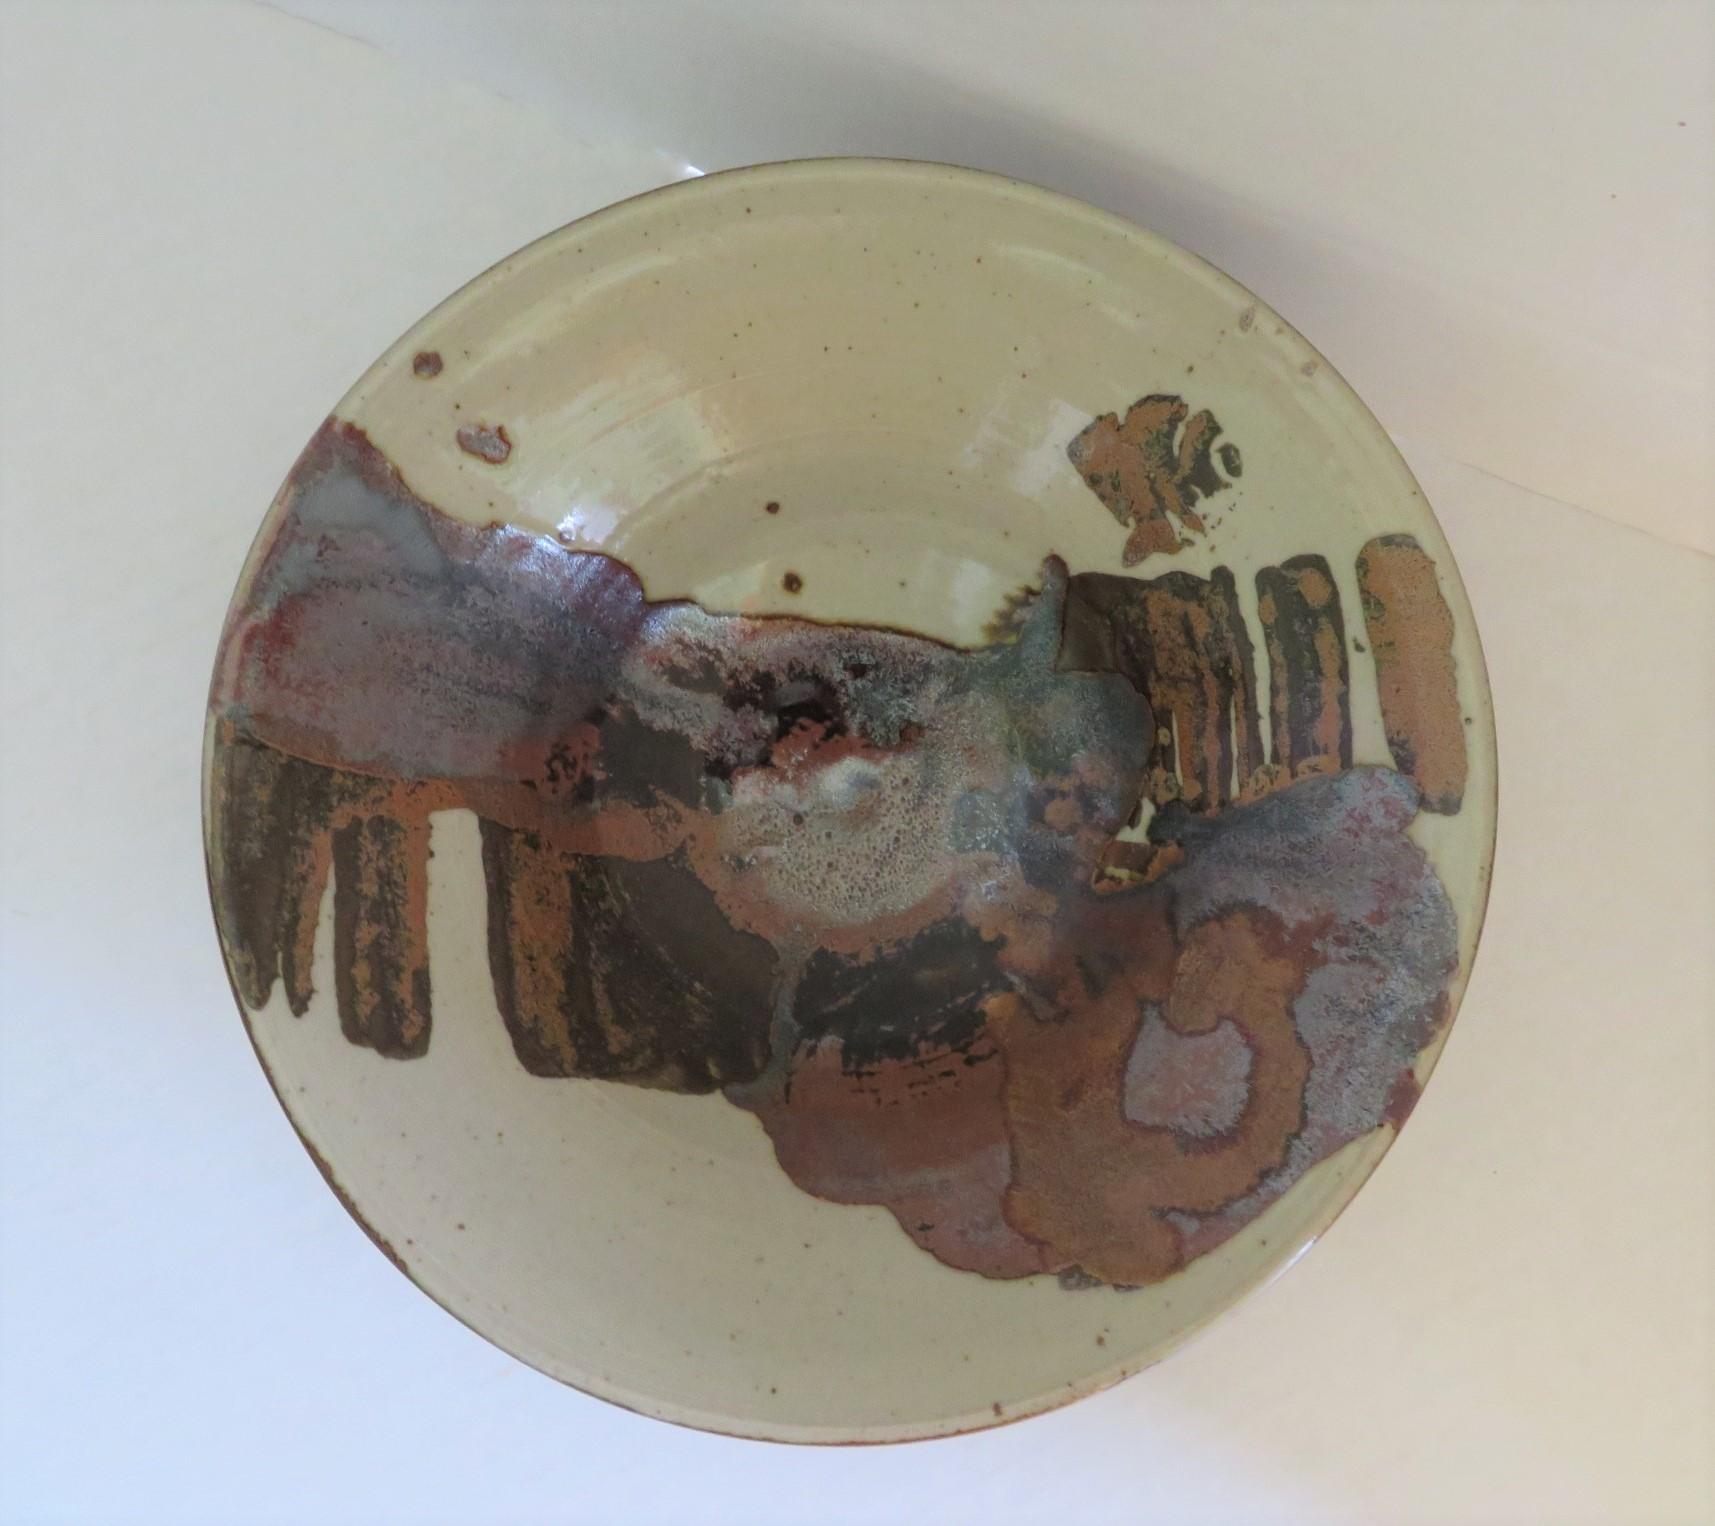  Organic Scandinavian Modern Ceramic Bowl by Carl Harry Stålhane for Designhuset For Sale 6